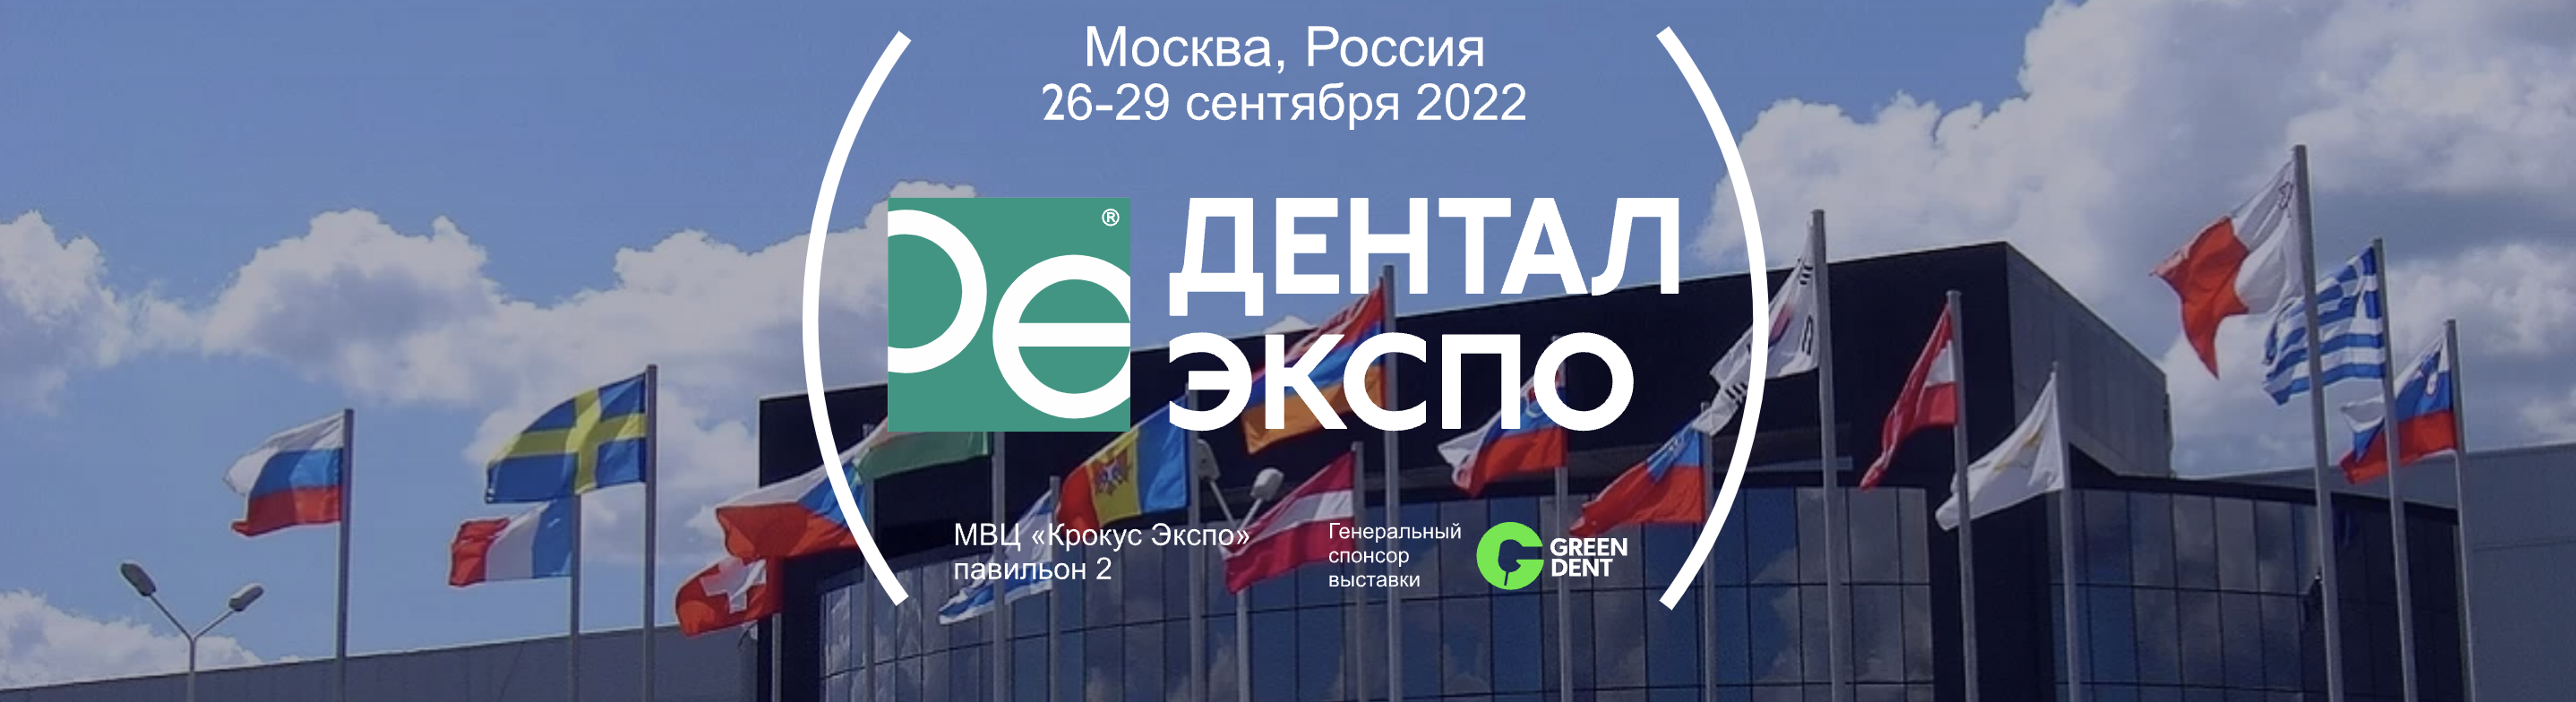 Дентал-Экспо Москва 2022